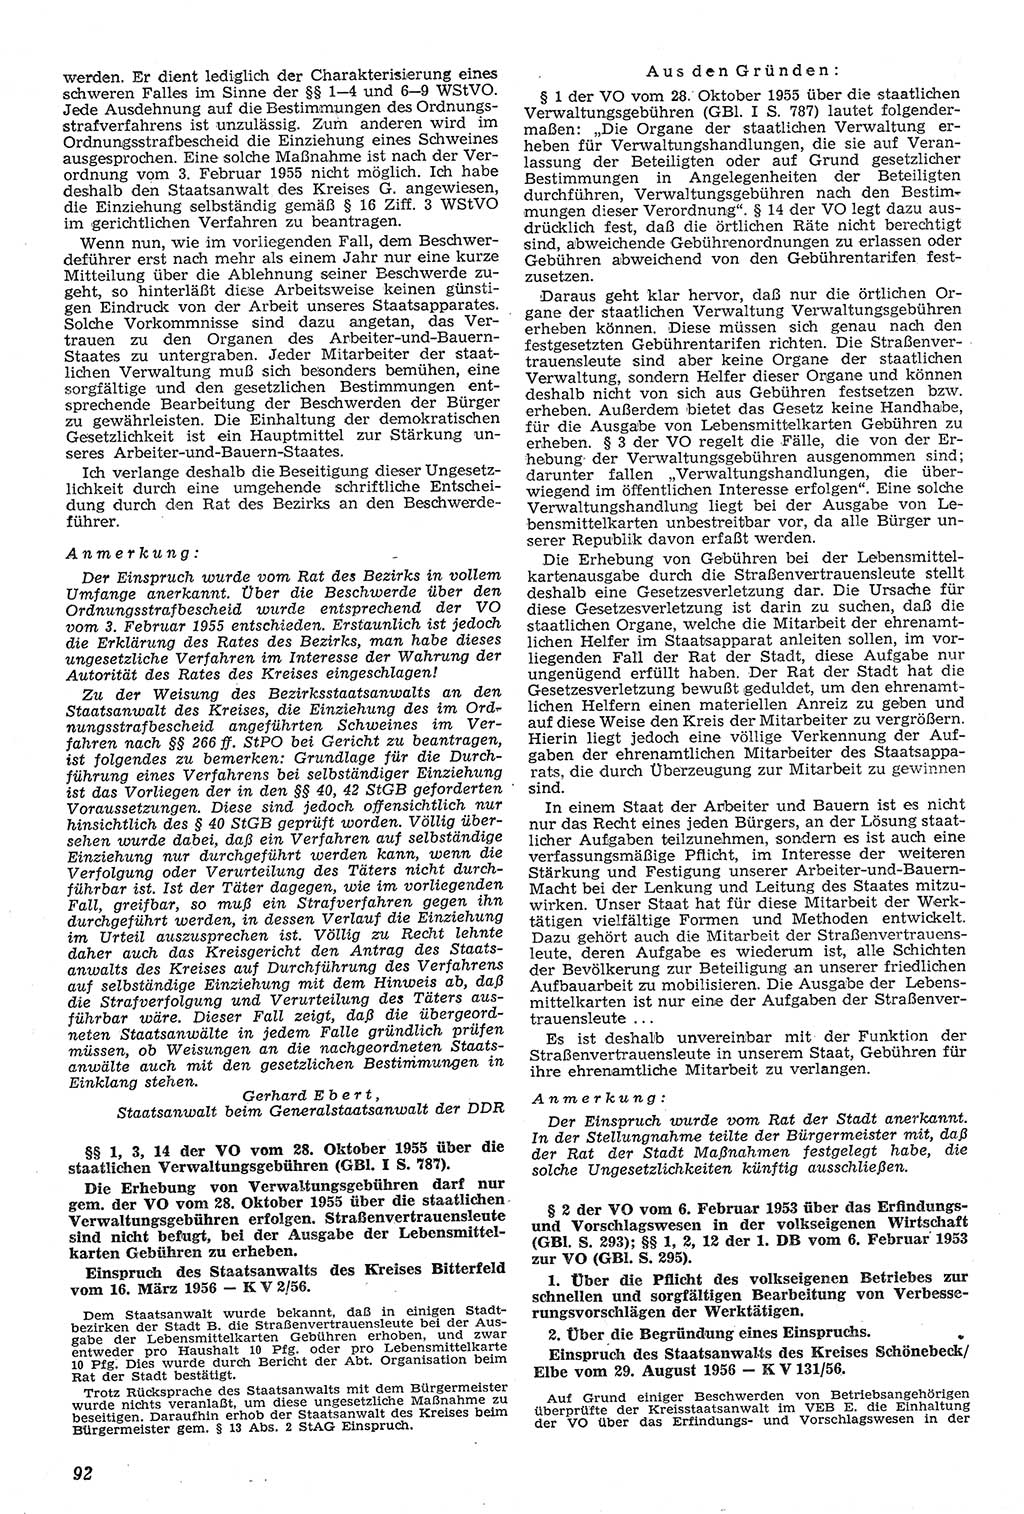 Neue Justiz (NJ), Zeitschrift für Recht und Rechtswissenschaft [Deutsche Demokratische Republik (DDR)], 11. Jahrgang 1957, Seite 92 (NJ DDR 1957, S. 92)